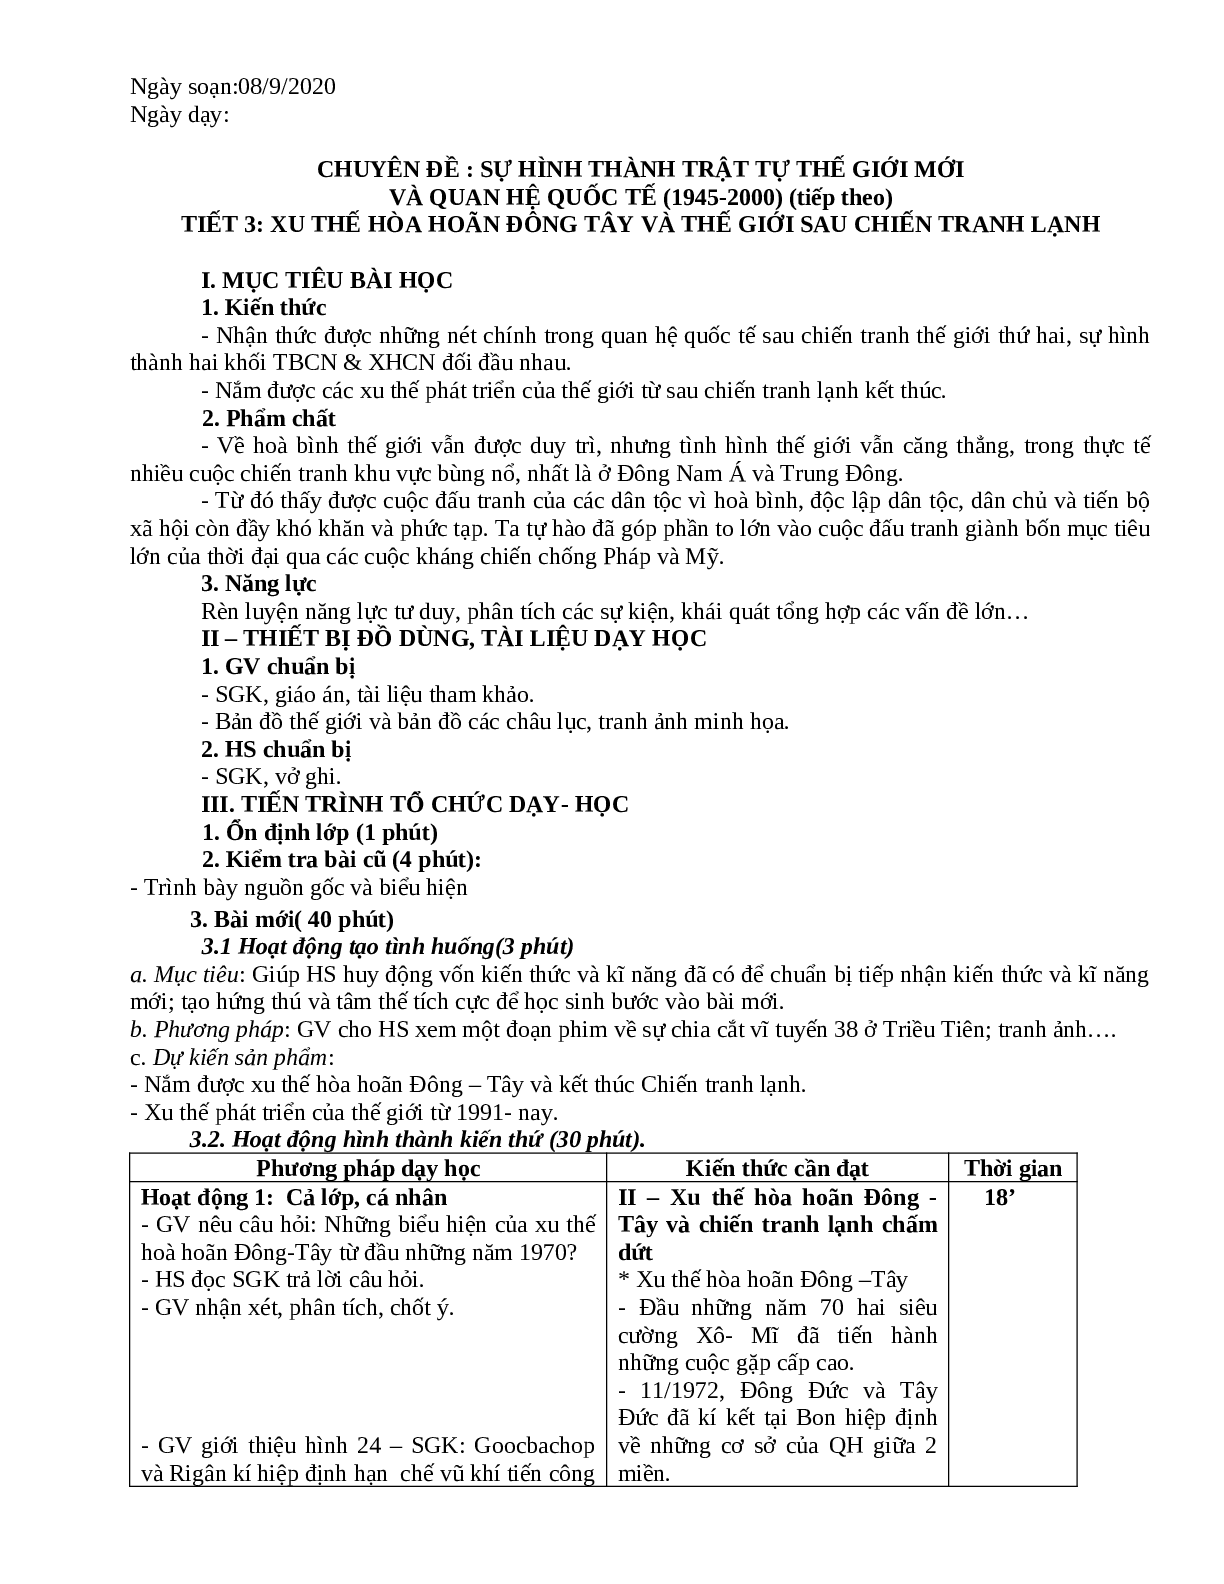 Giáo án Lịch Sử 11 chuẩn nhất (trang 6)